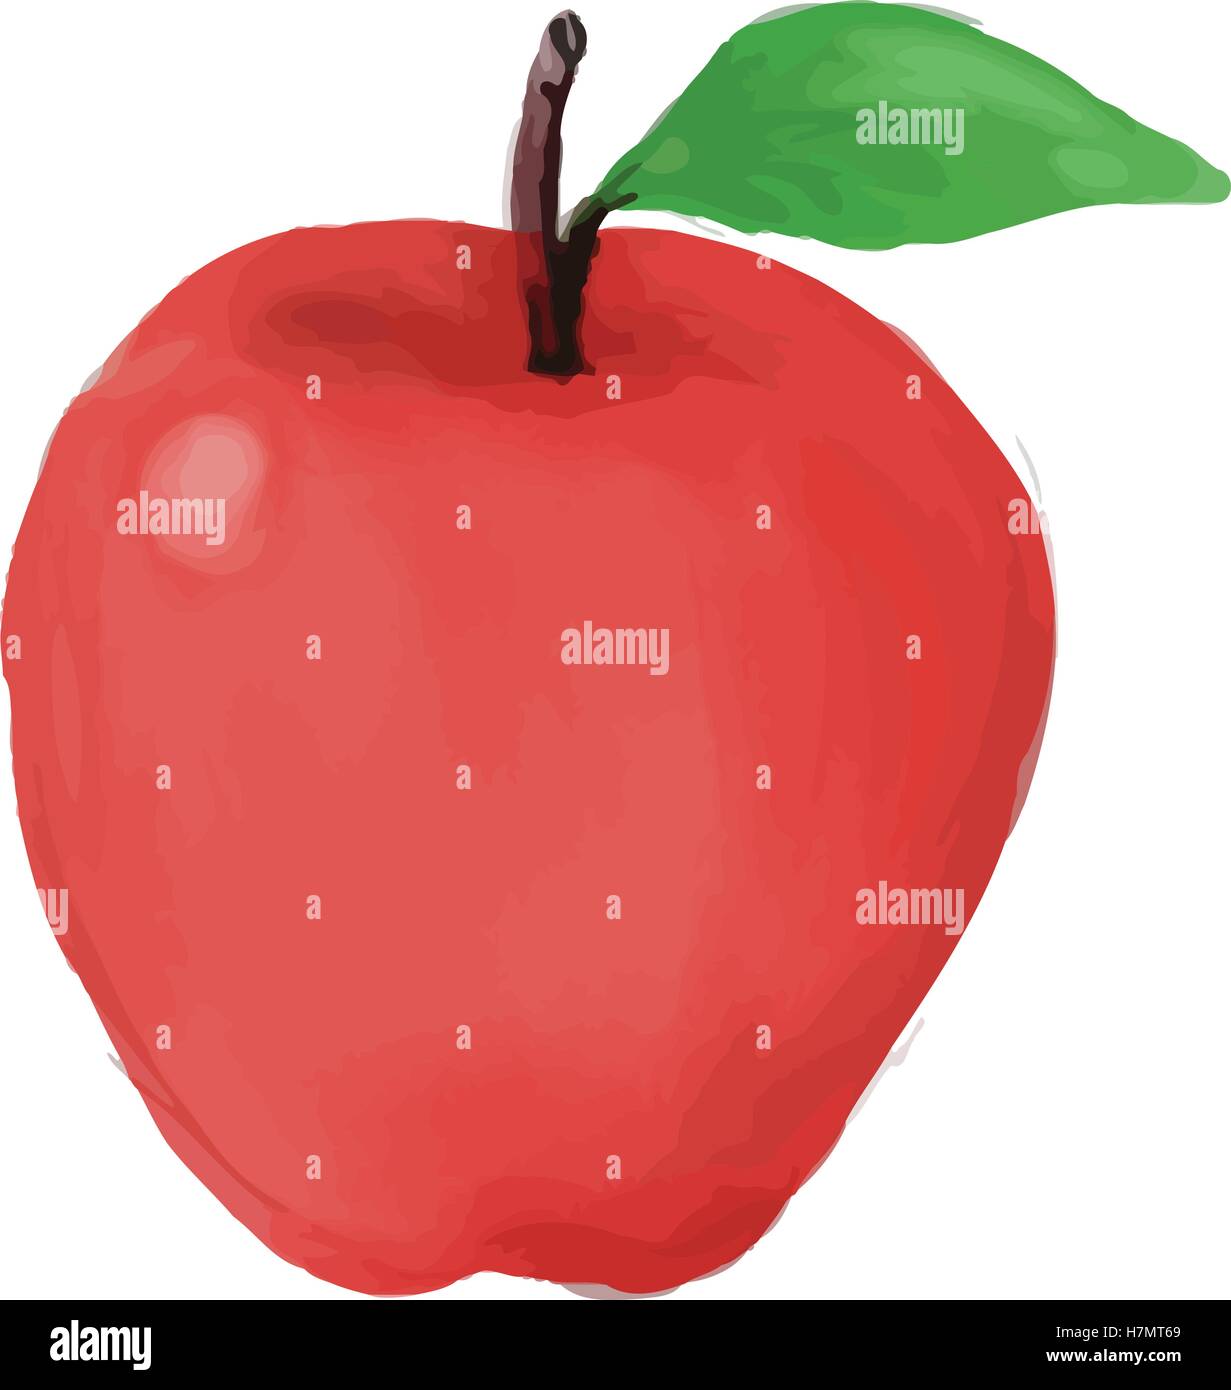 Stile acquerello illustrazione di una mela rossa con foglie viste dalla parte anteriore impostato su isolato sullo sfondo bianco. Illustrazione Vettoriale